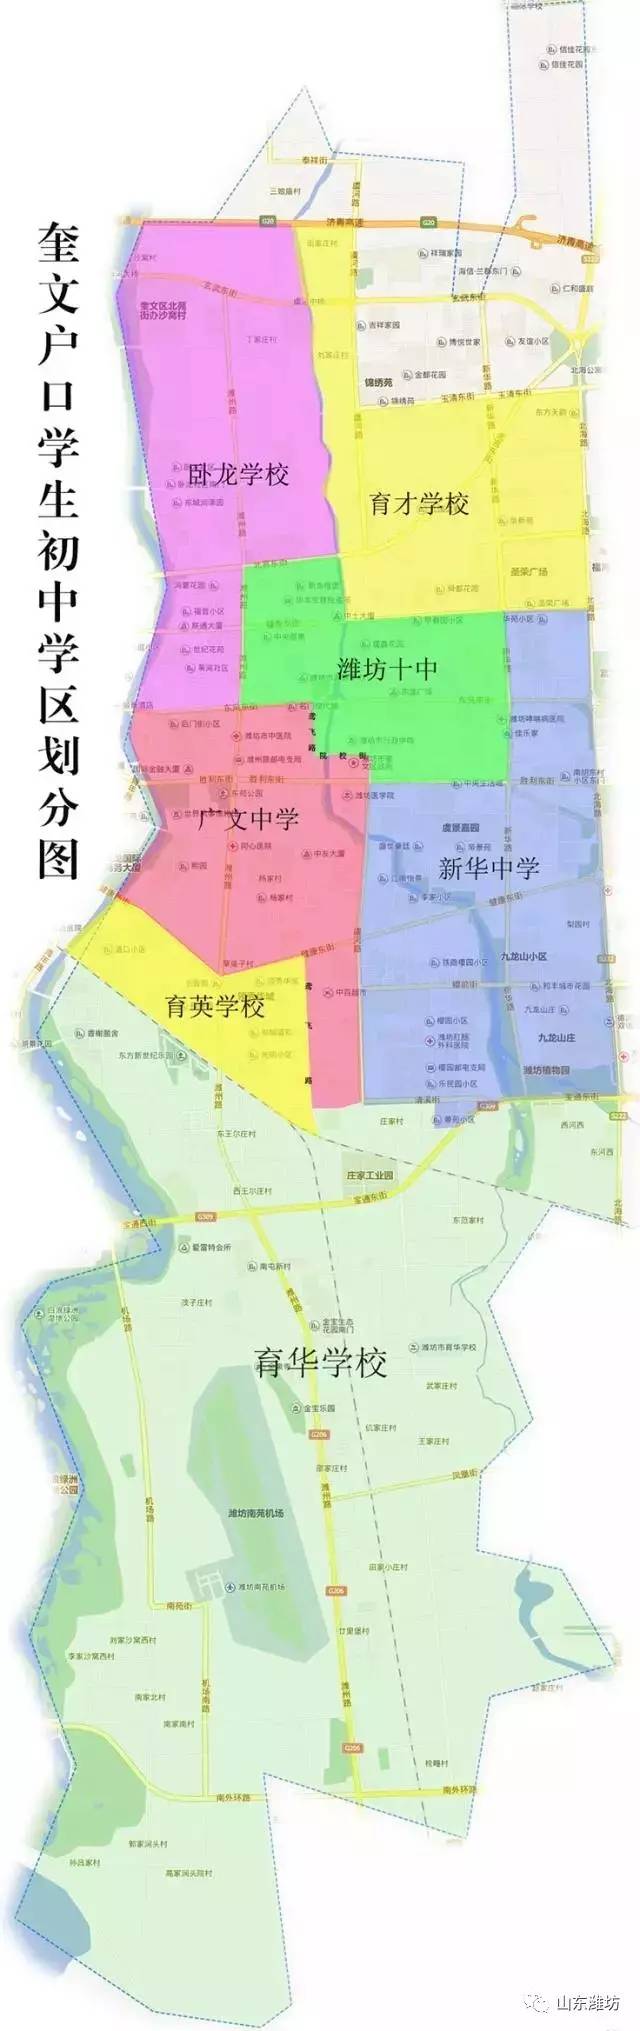 随迁子女学区划分1.潍坊广文中学学区.